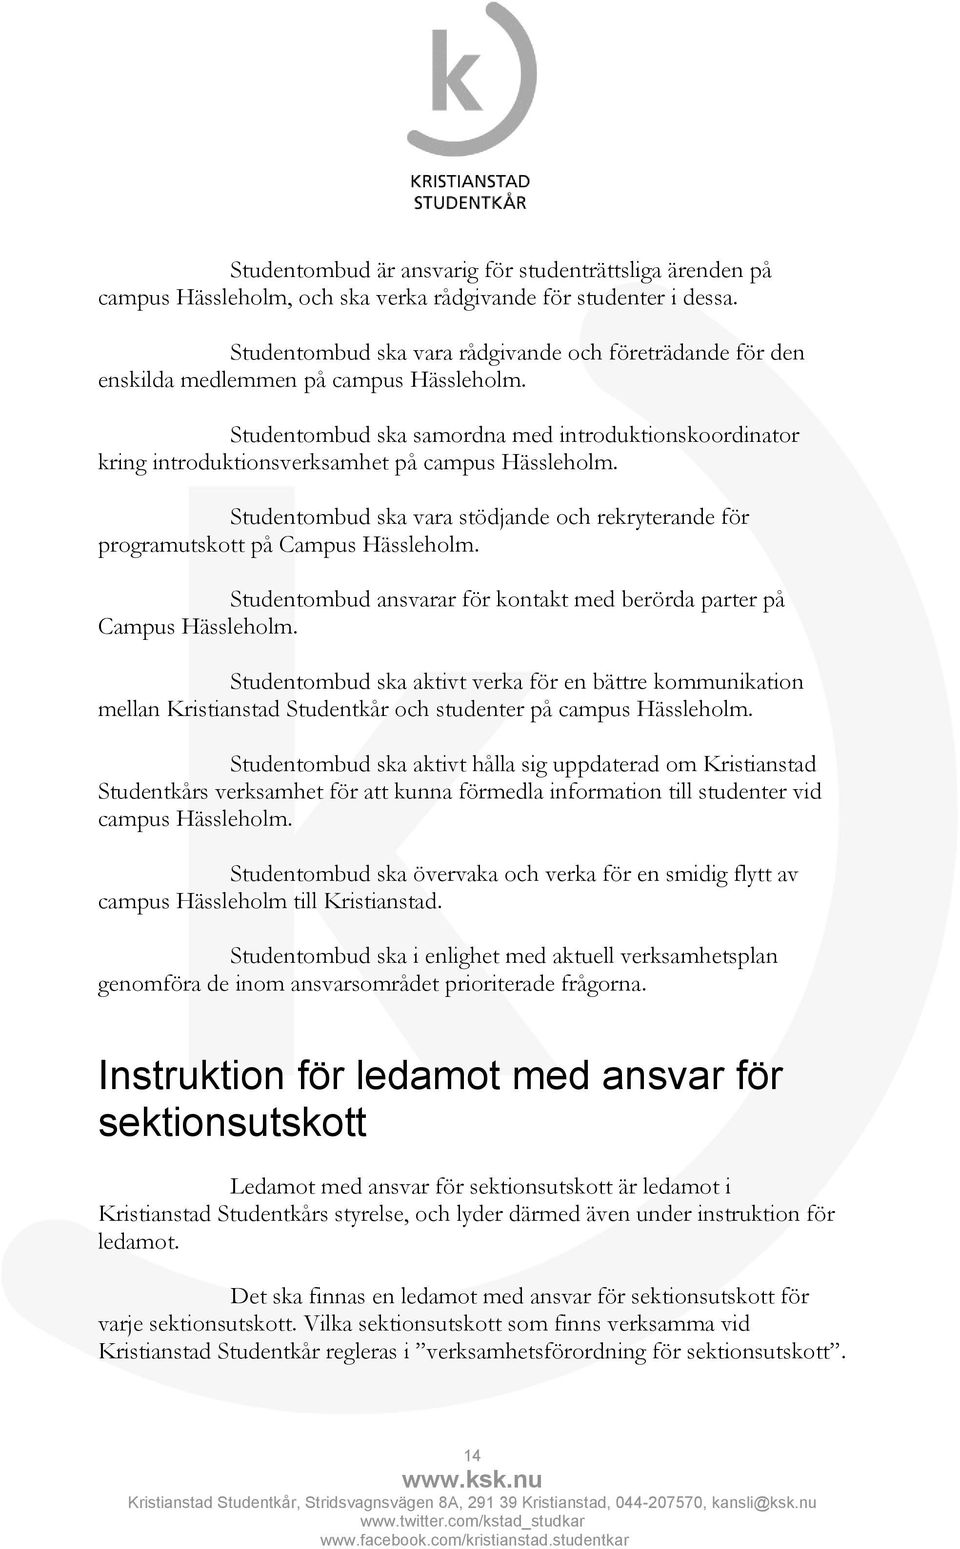 Studentombud ska samordna med introduktionskoordinator kring introduktionsverksamhet på campus Hässleholm. Studentombud ska vara stödjande och rekryterande för programutskott på Campus Hässleholm.